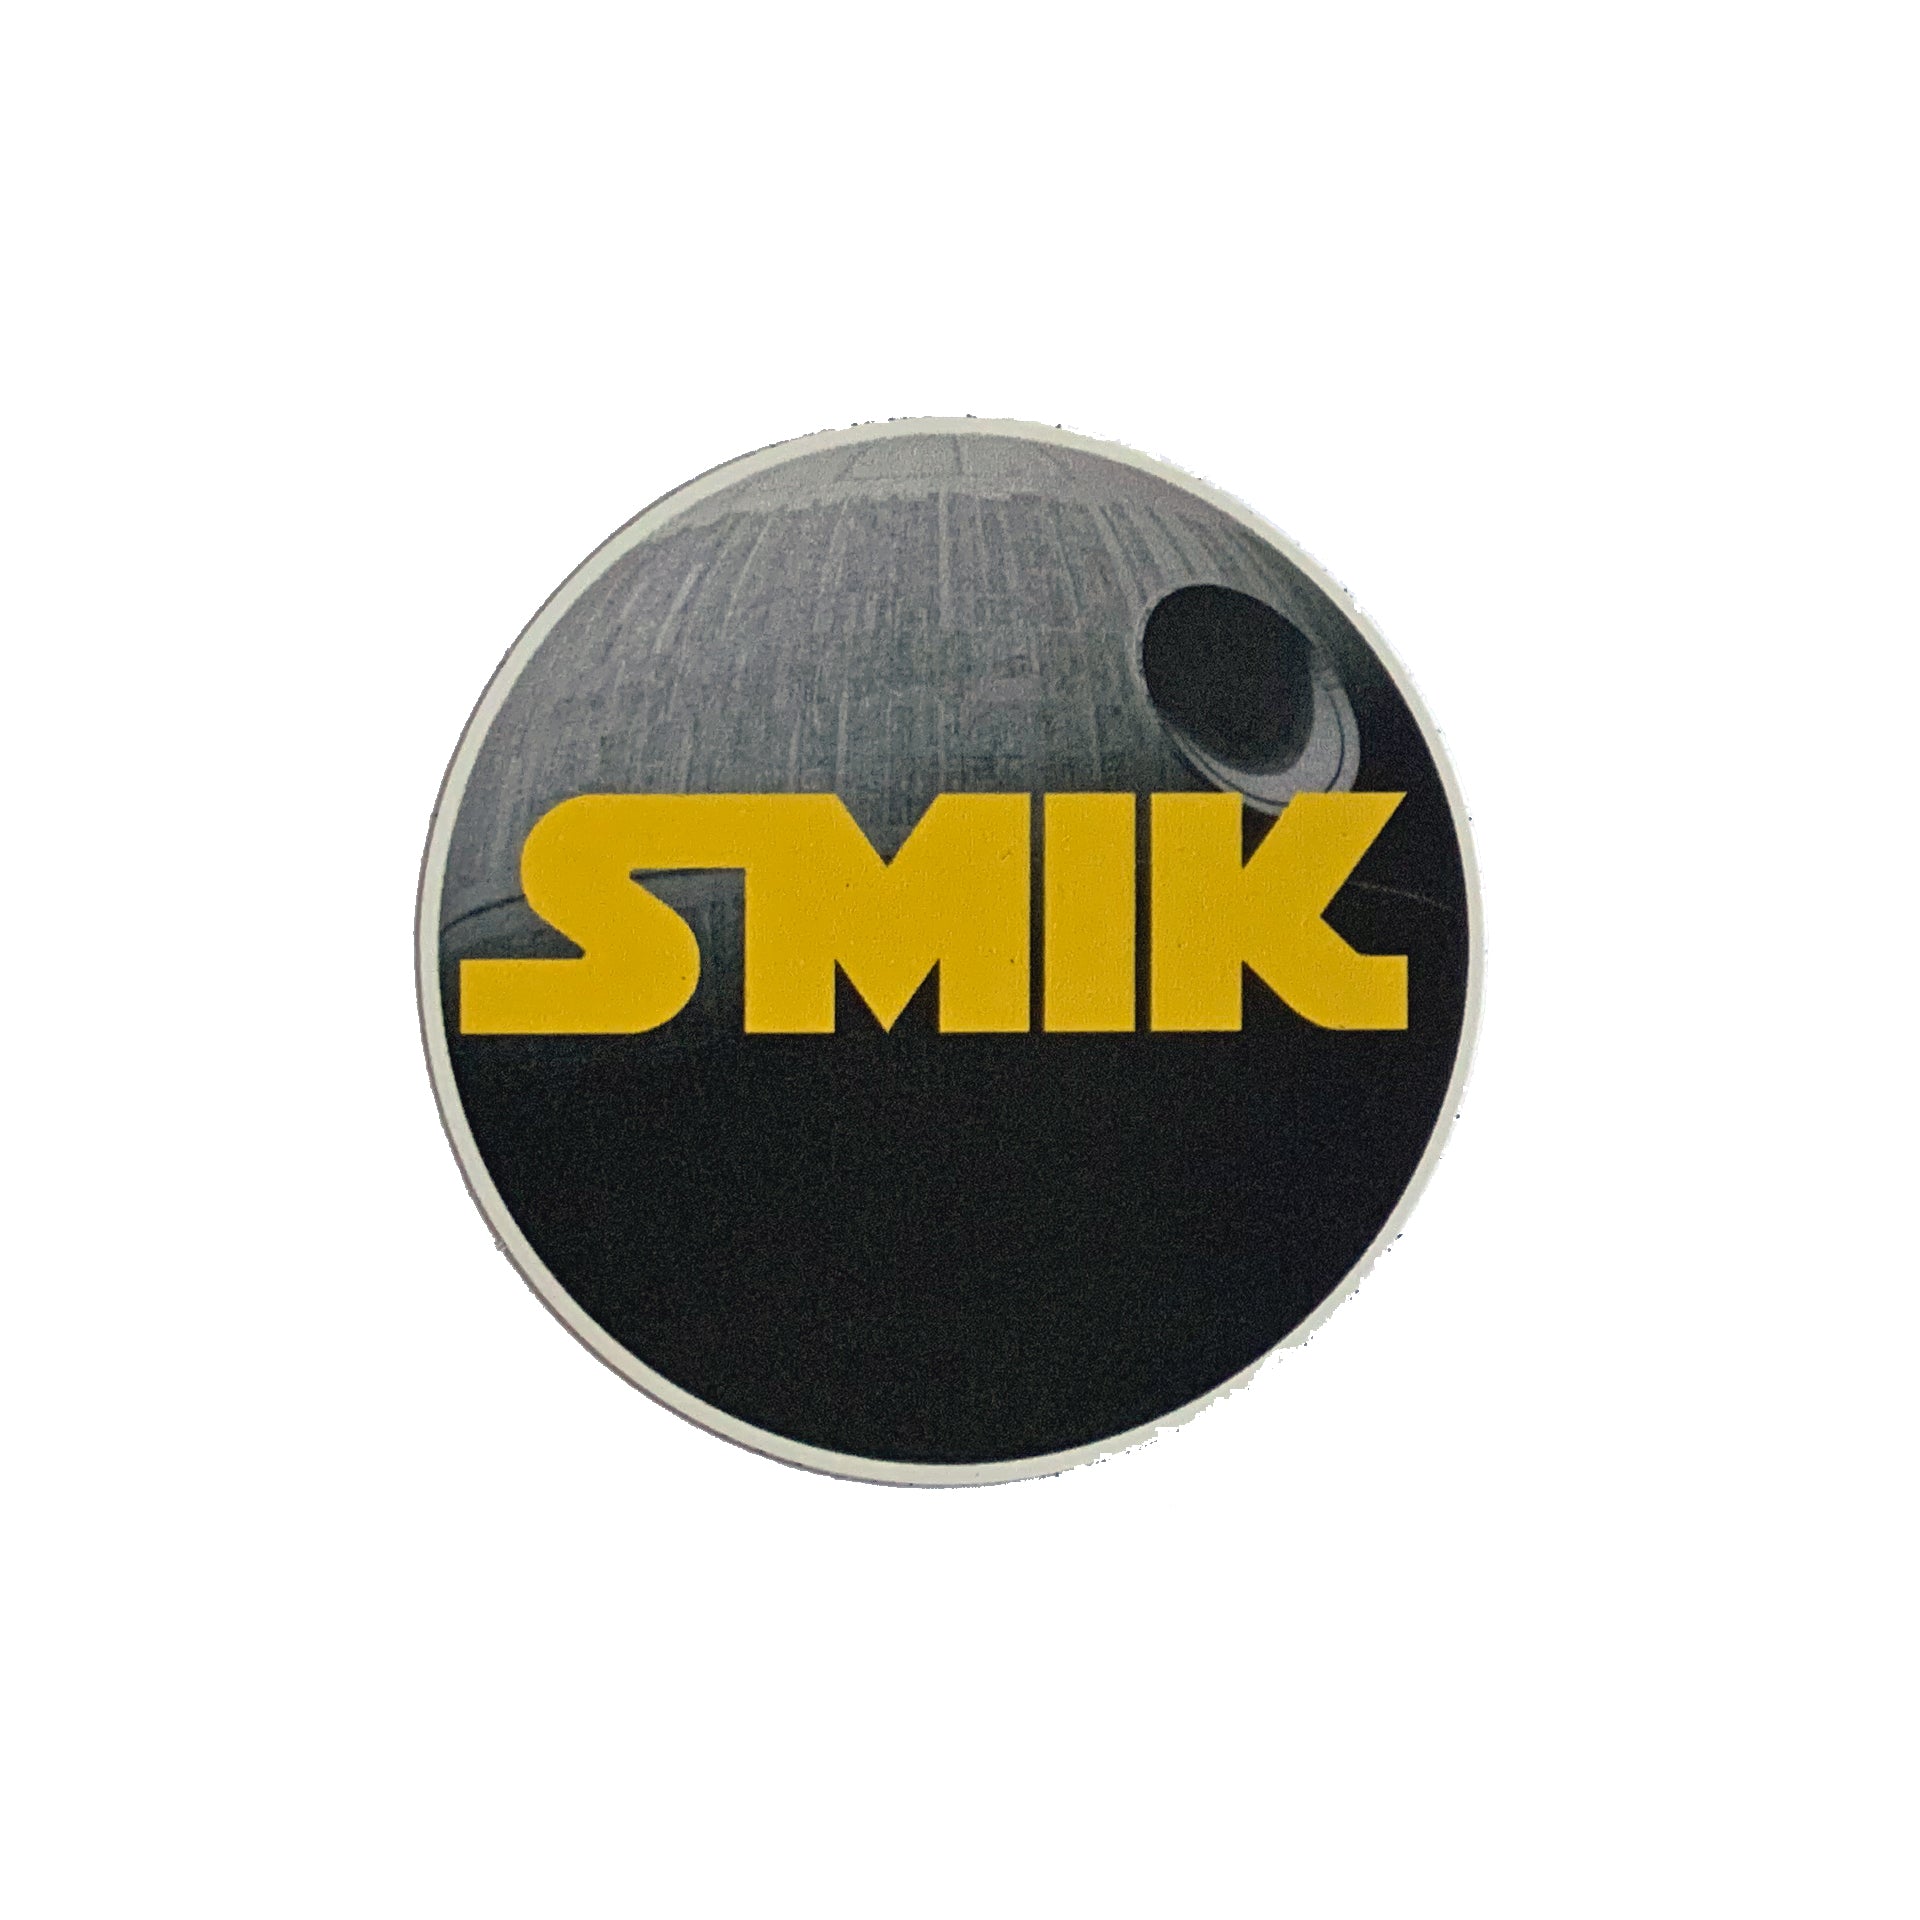 SMIK SUP Stickers Vinyl Pegatinas Star Wars